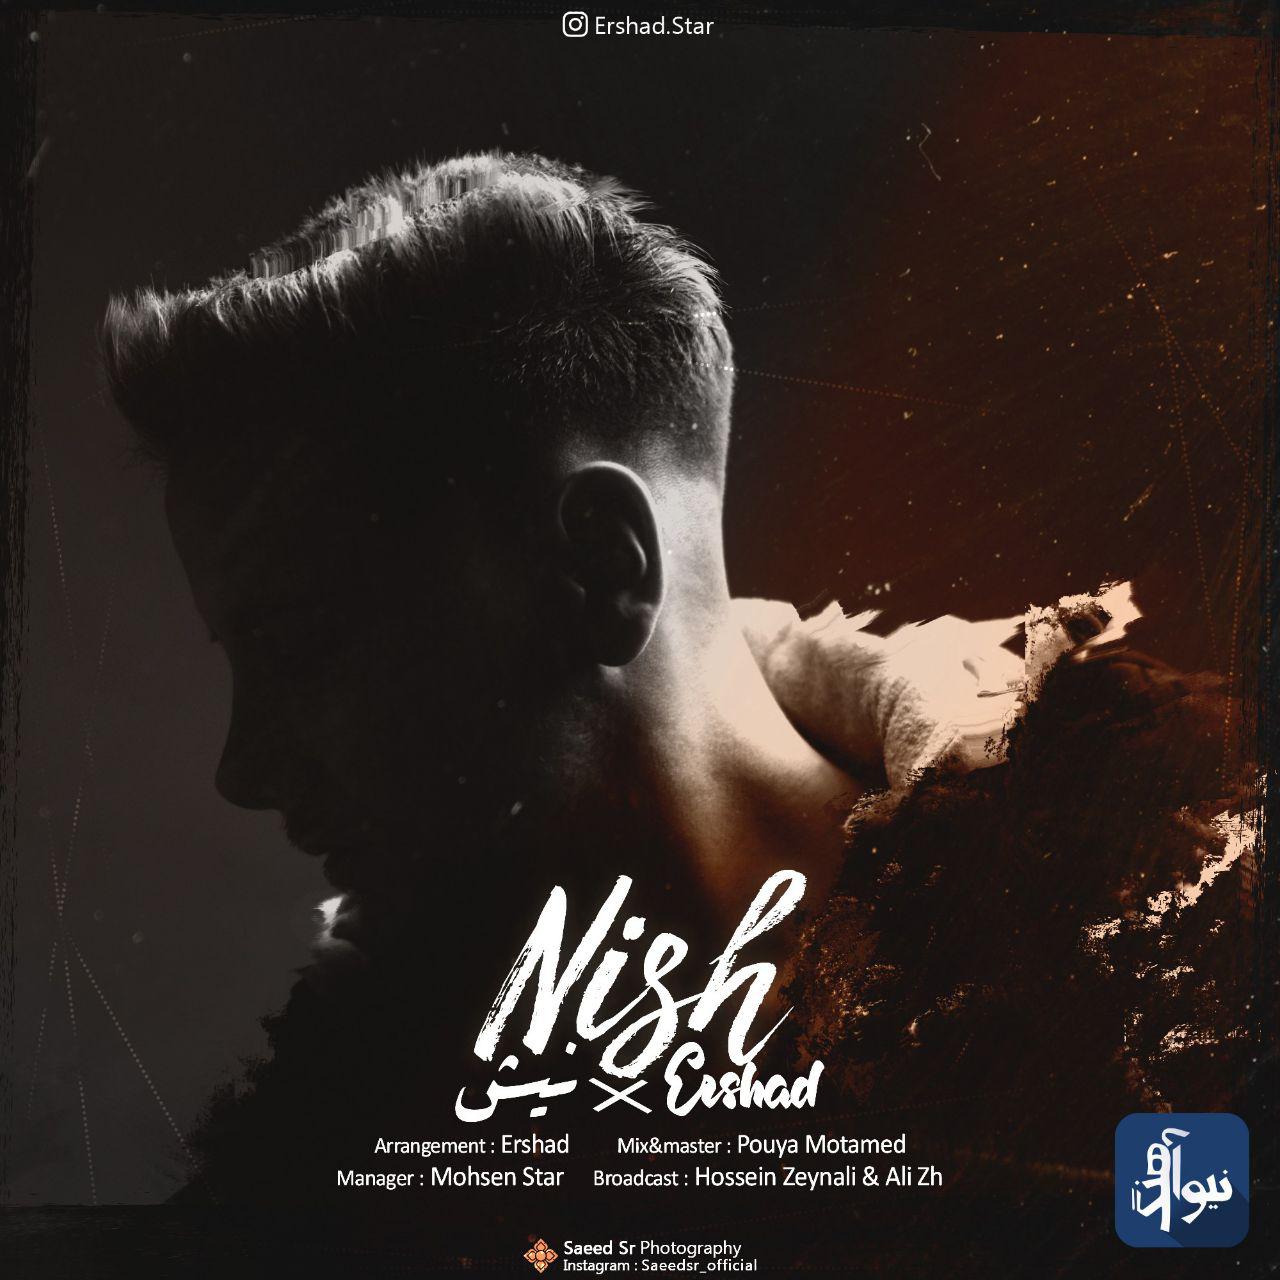  دانلود آهنگ جدید ارشاد - نیش | Download New Music By Ershad - Nish